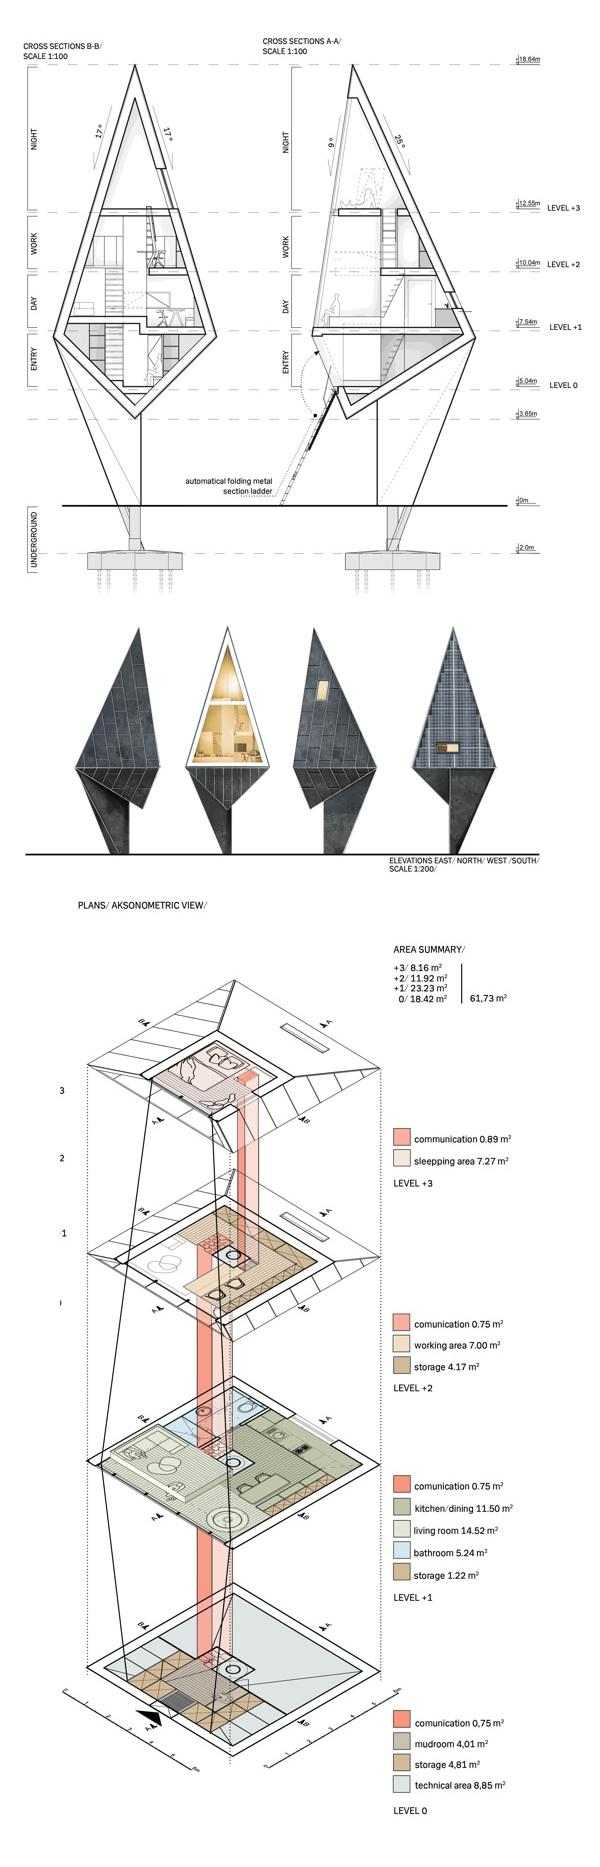 Passiv-Haus Konrad-Wójcik Projekt Konzept 3d Visualisierungen Architektur